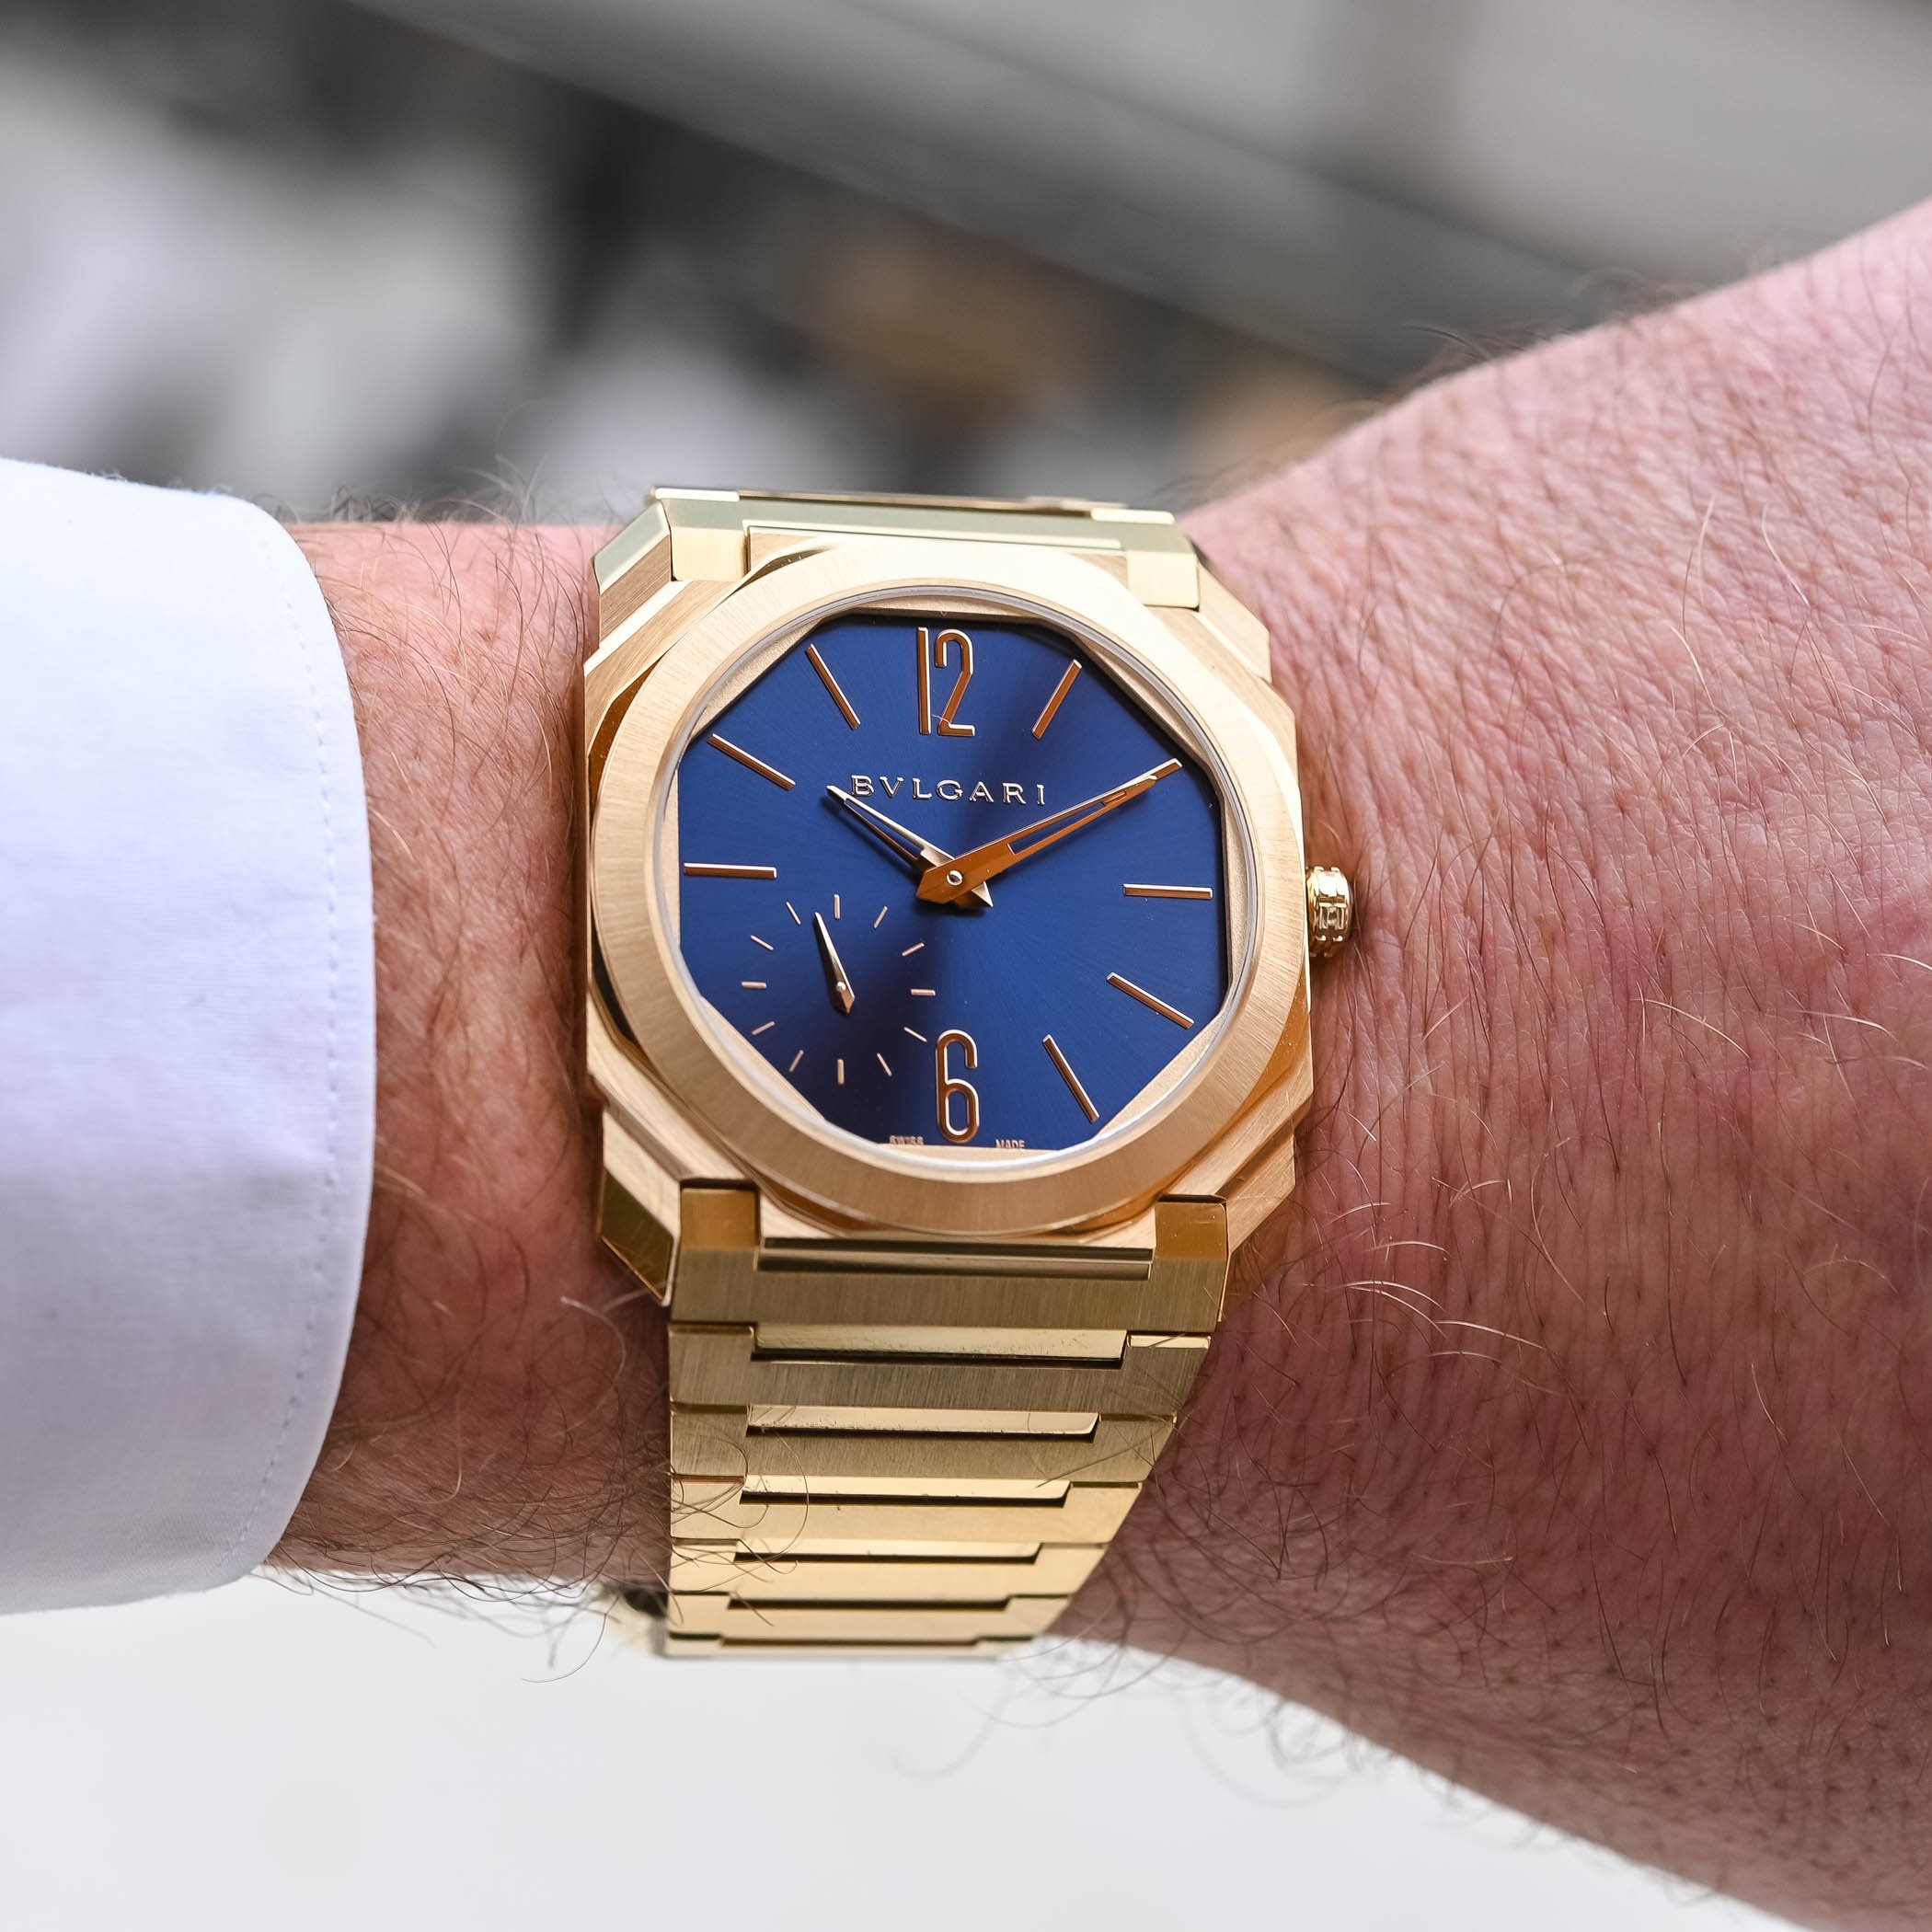 Новые сине-золотые часы Bulgari Octo Finissimo Automatic